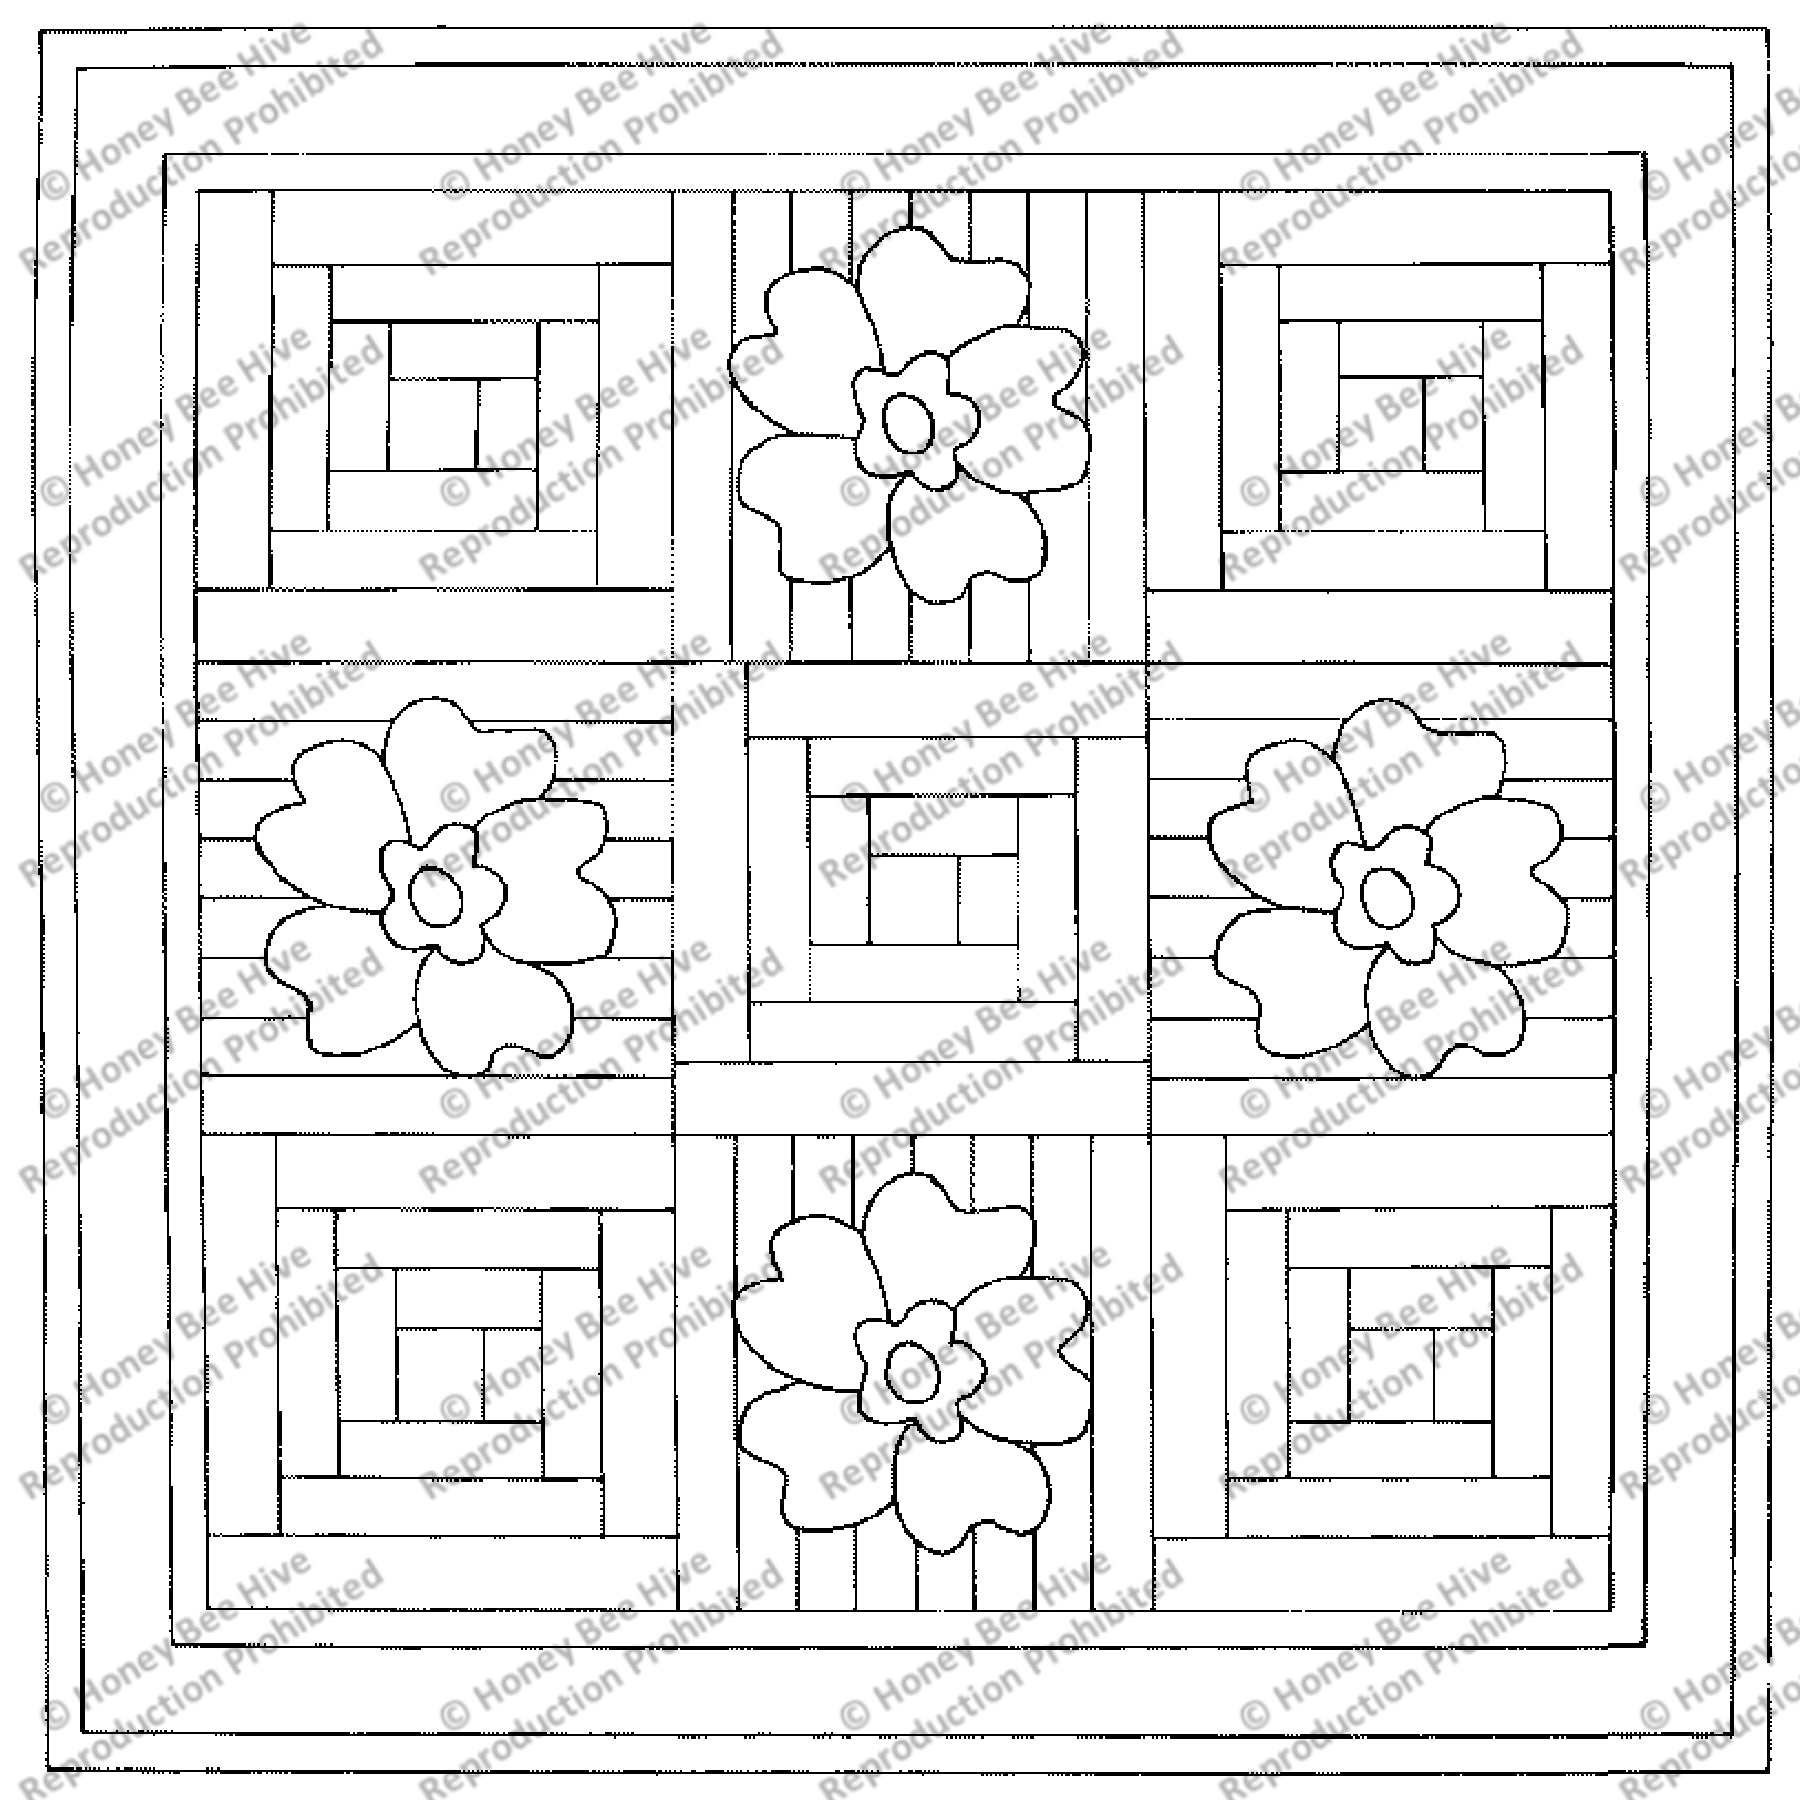 Floral Log Cabin, rug hooking pattern